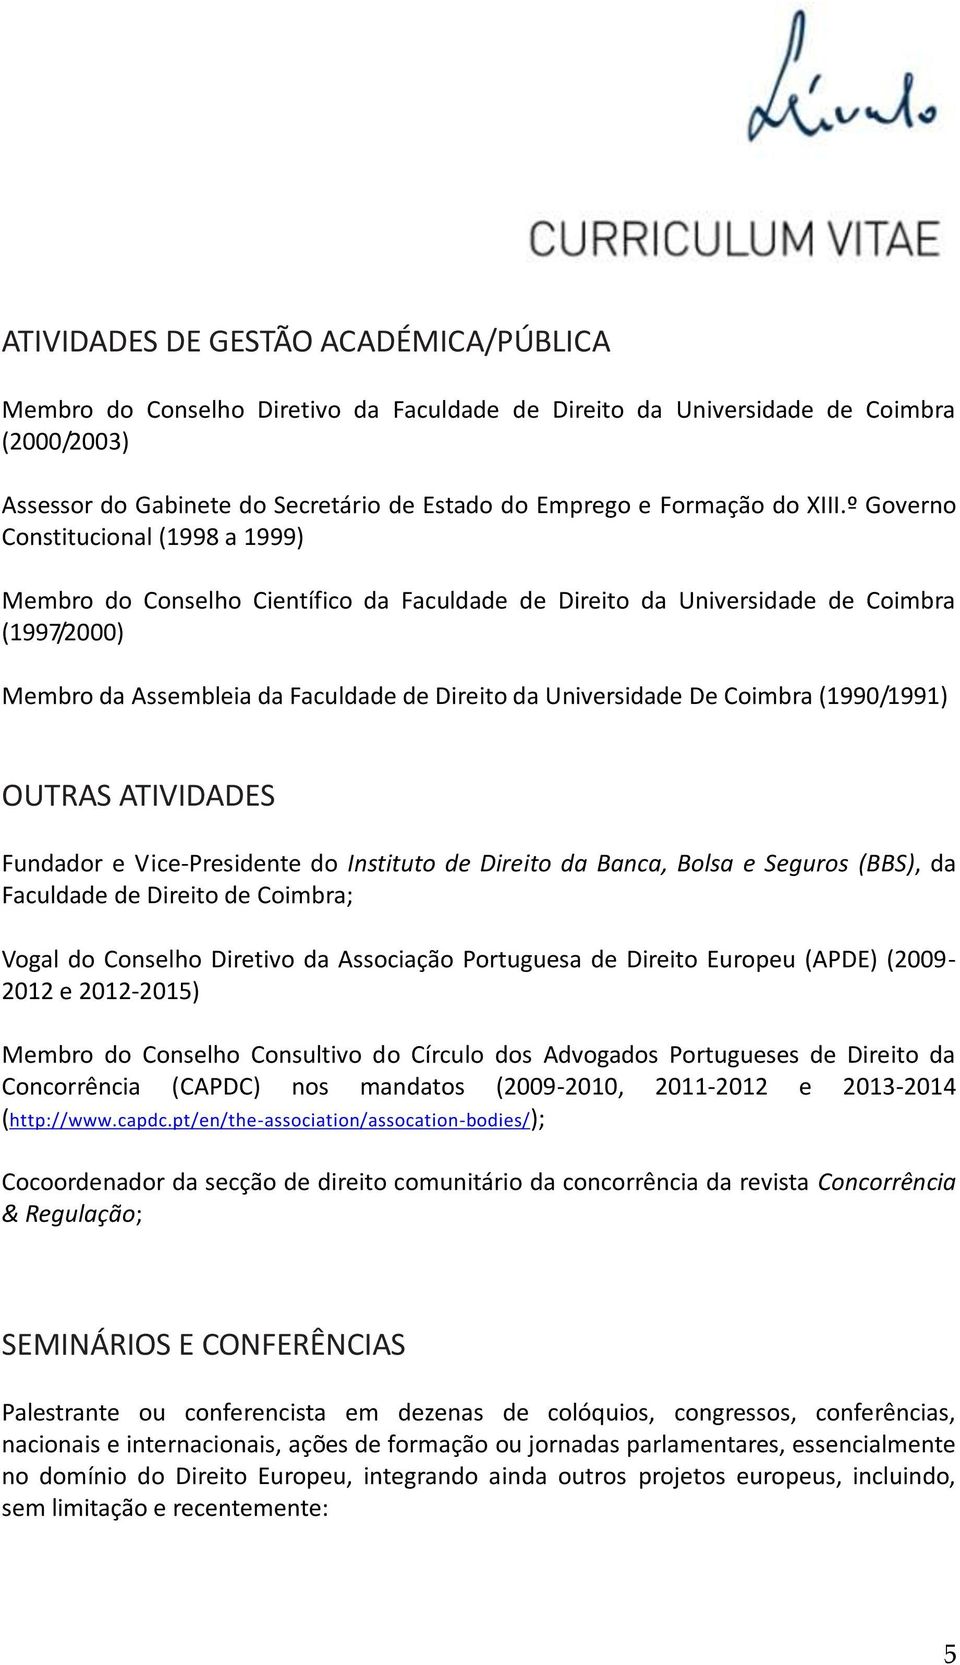 De Coimbra (1990/1991) OUTRAS ATIVIDADES Fundador e Vice-Presidente do Instituto de Direito da Banca, Bolsa e Seguros (BBS), da Faculdade de Direito de Coimbra; Vogal do Conselho Diretivo da